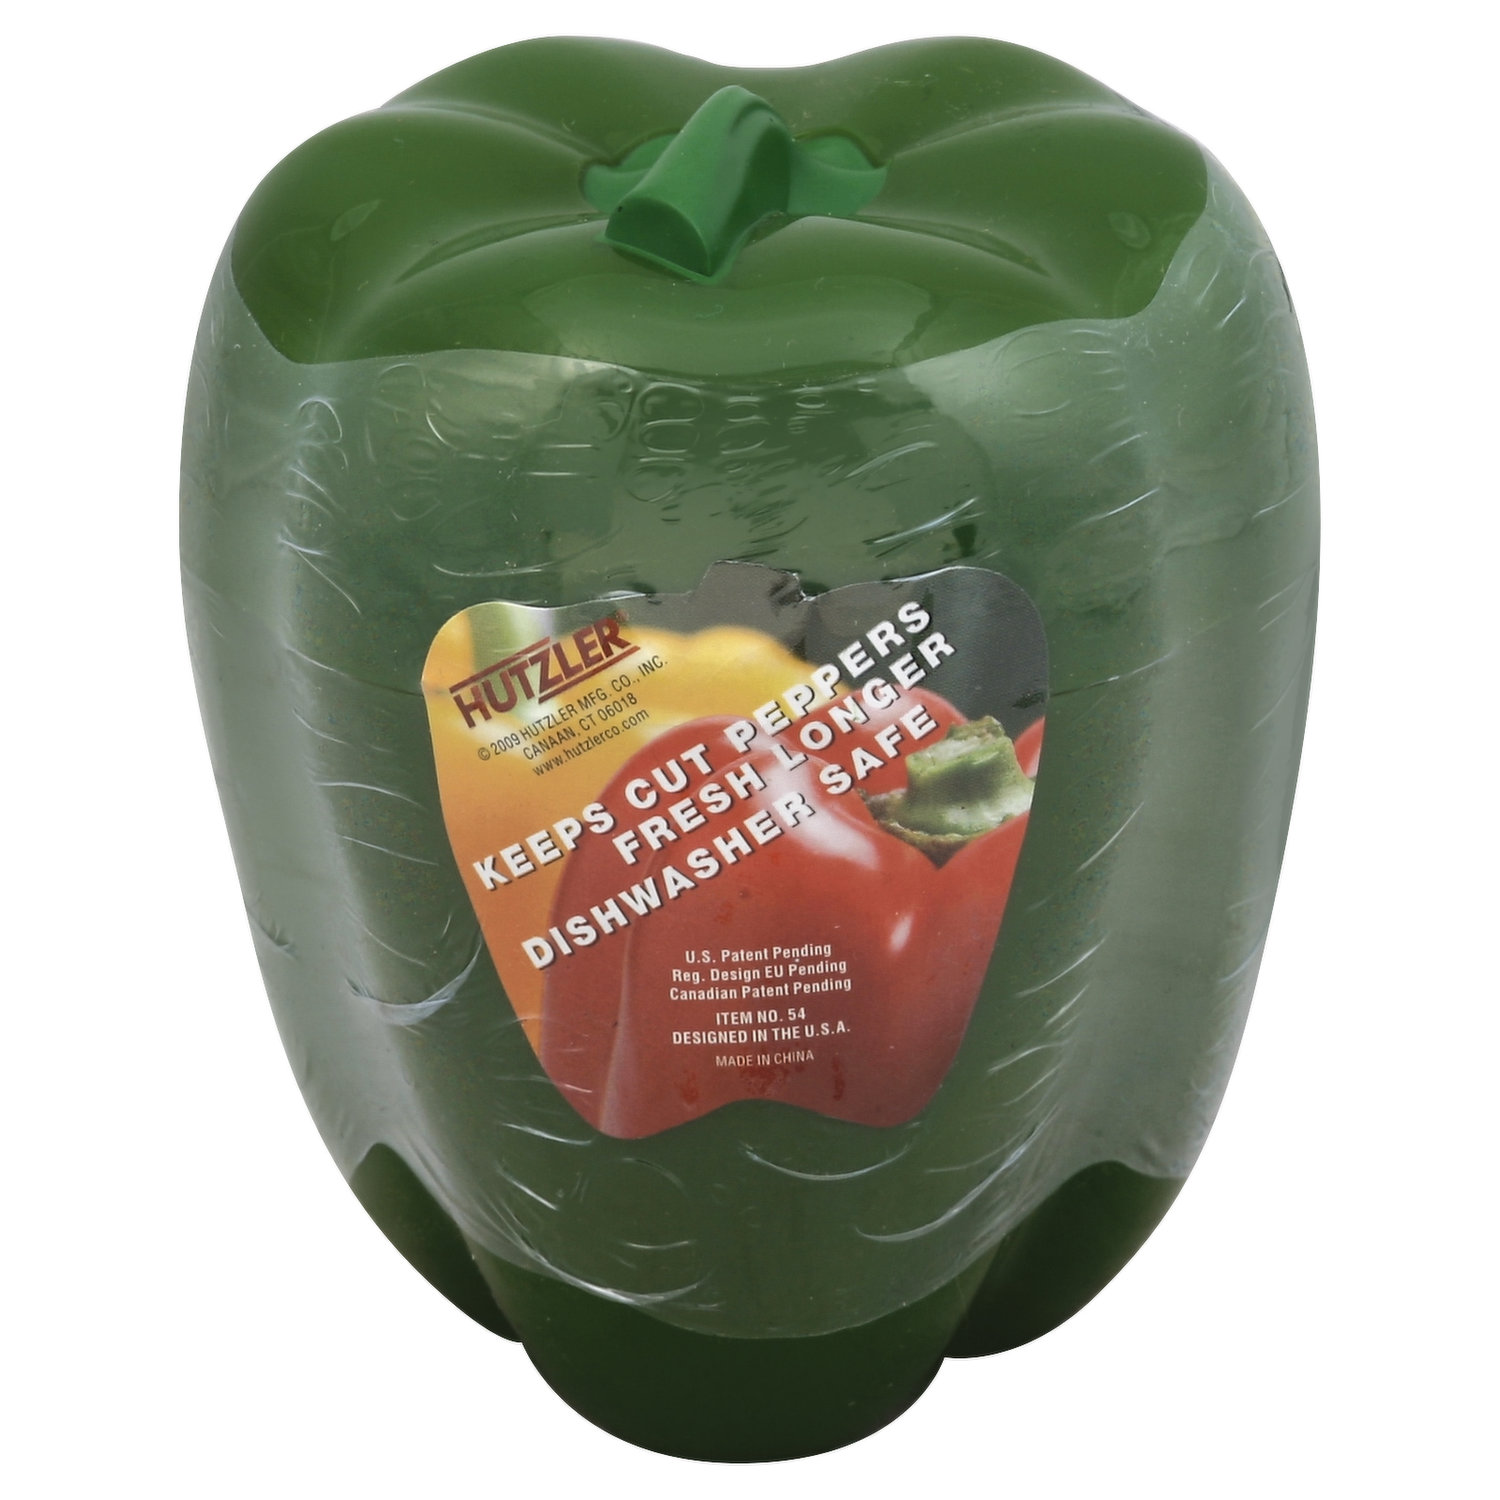 Hutzler Vegetable Saver - Keeps Vegetables Fresh Longer